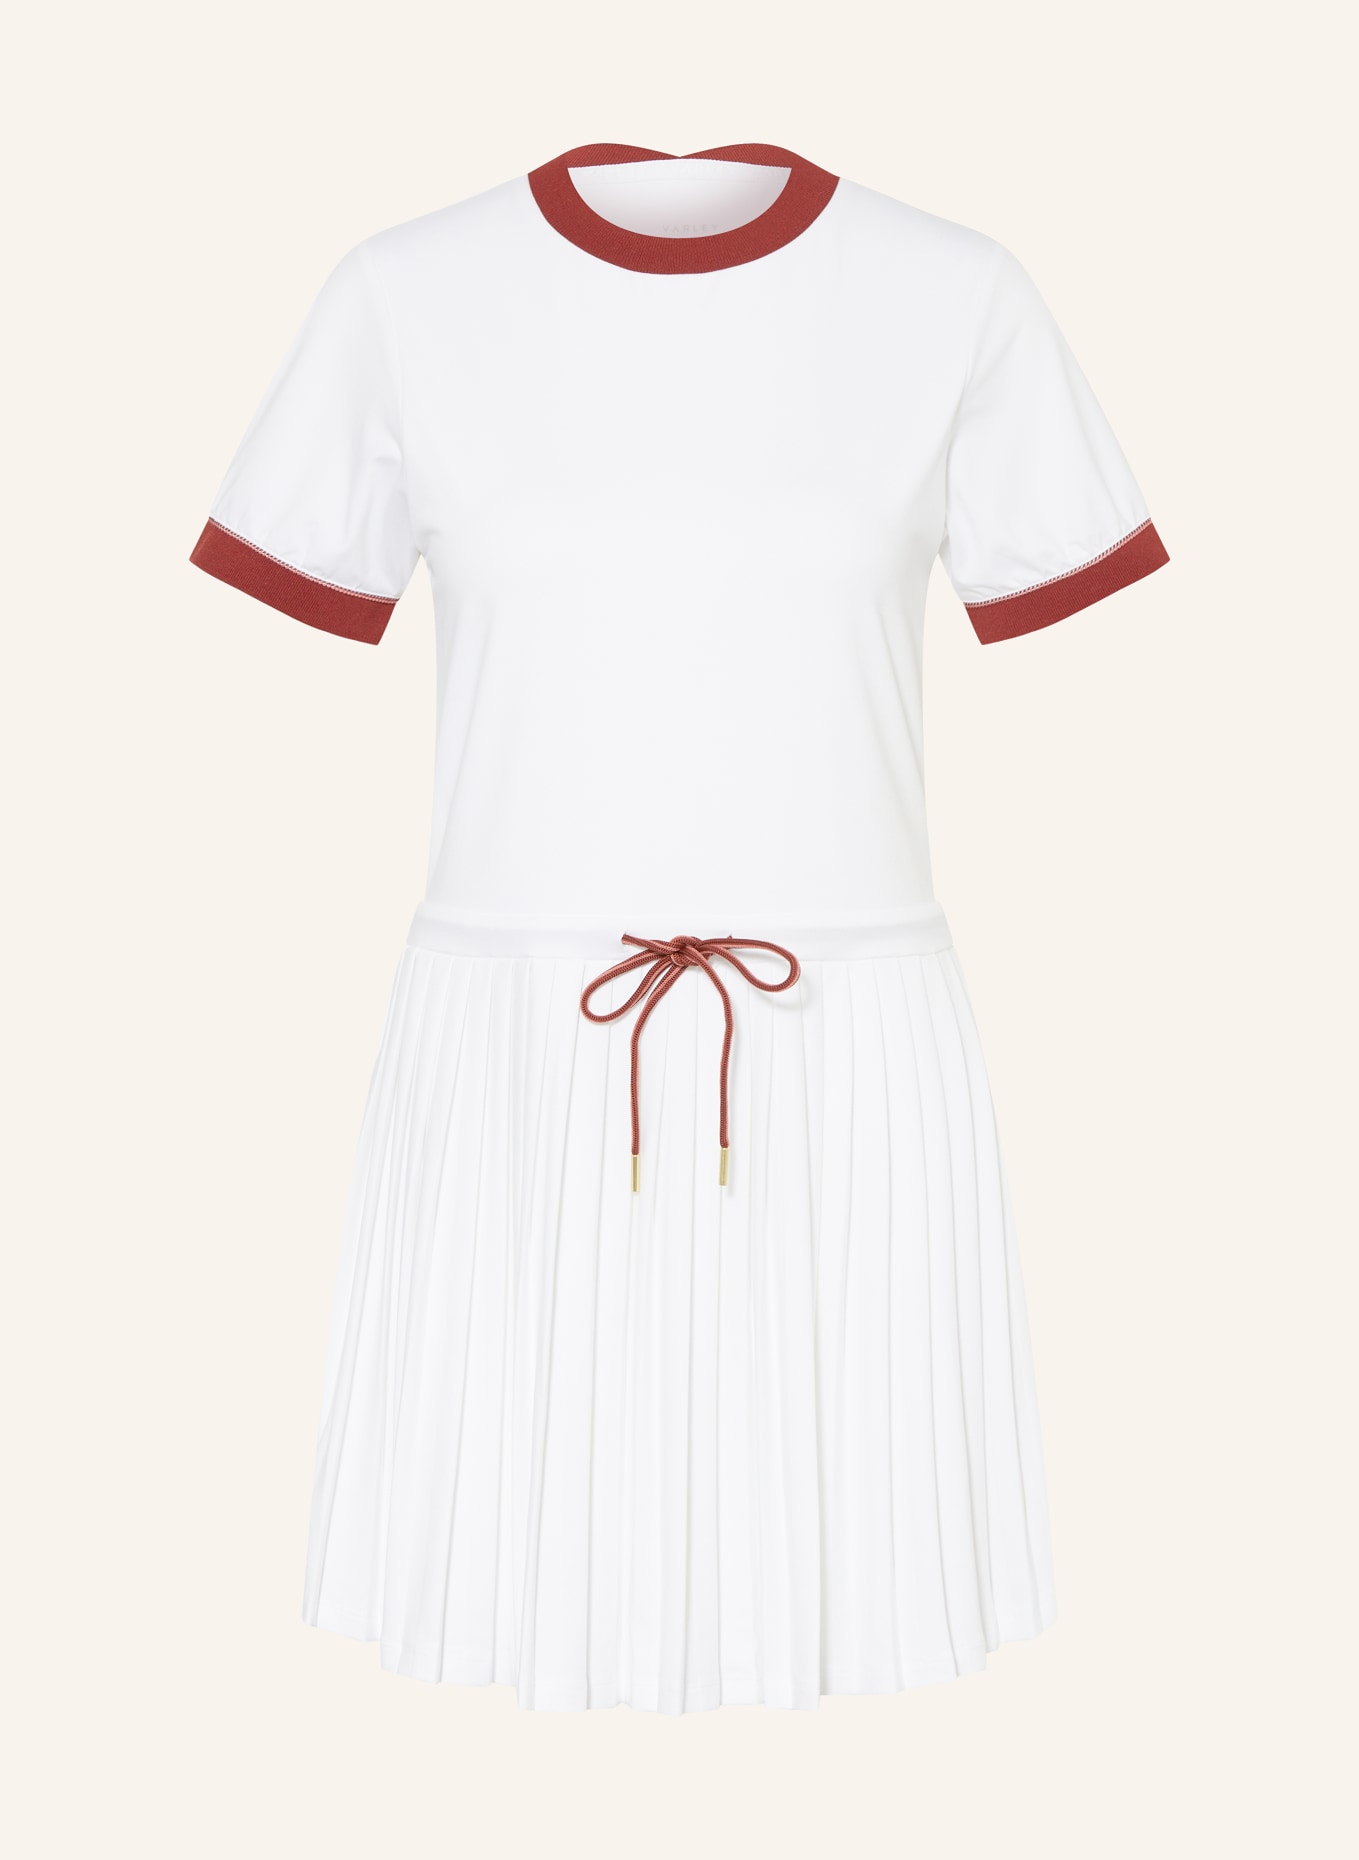 VARLEY Tenniskleid TRENT mit Plissees, Farbe: WEISS (Bild 1)